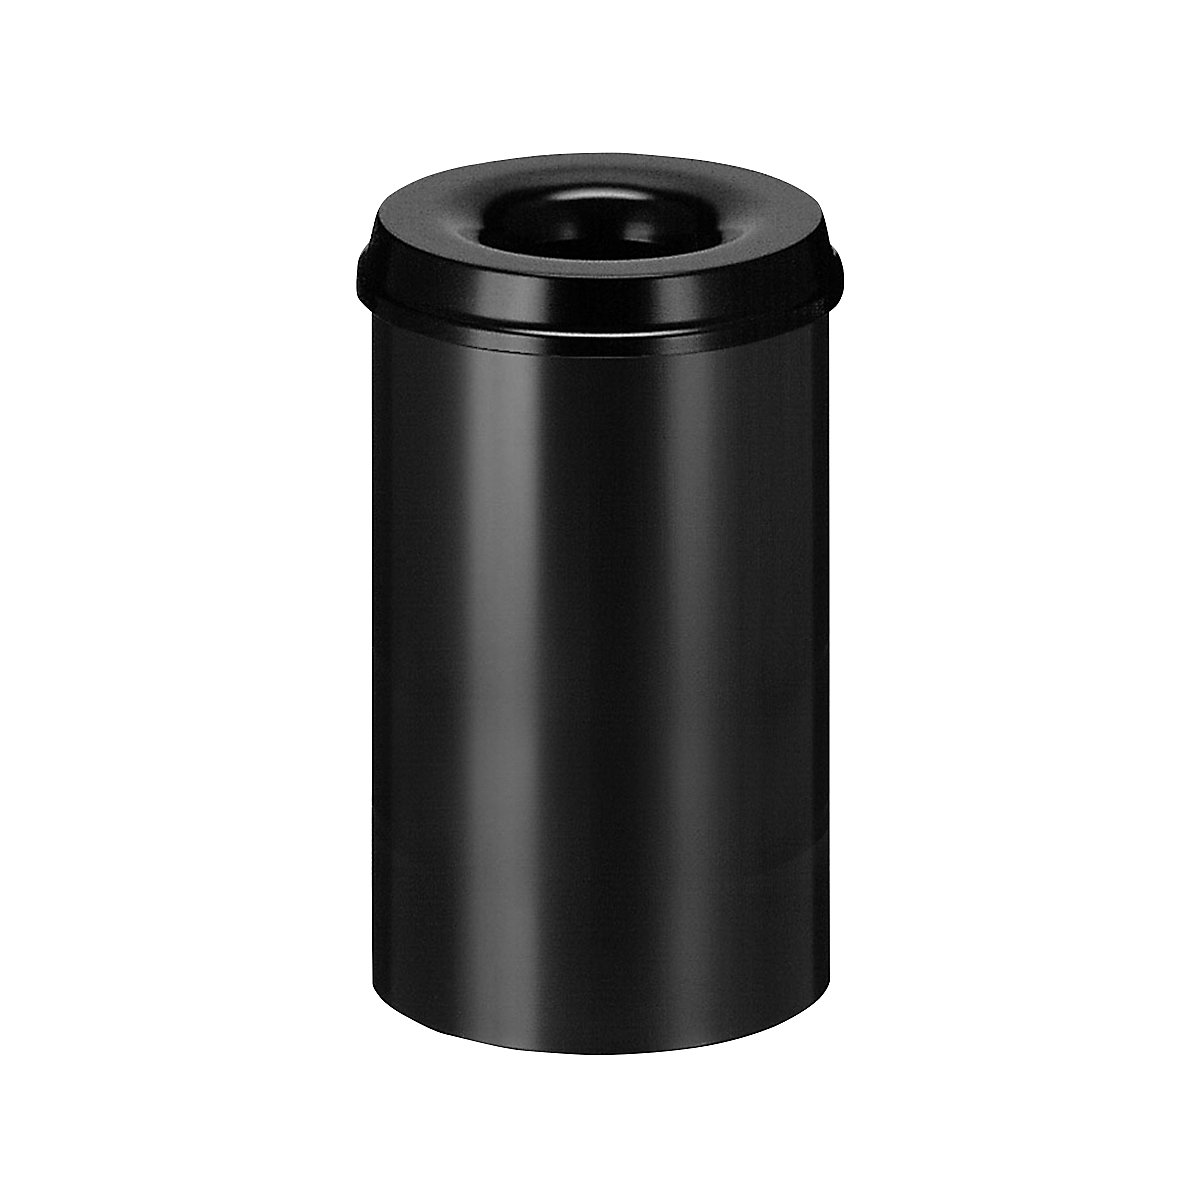 Sigurnosna kanta za papir, čelik, samogasiva, volumen 20 l, VxØ 426 x 260 mm, korpus u crnoj boji / vrh za gašenje u crnoj boji-8